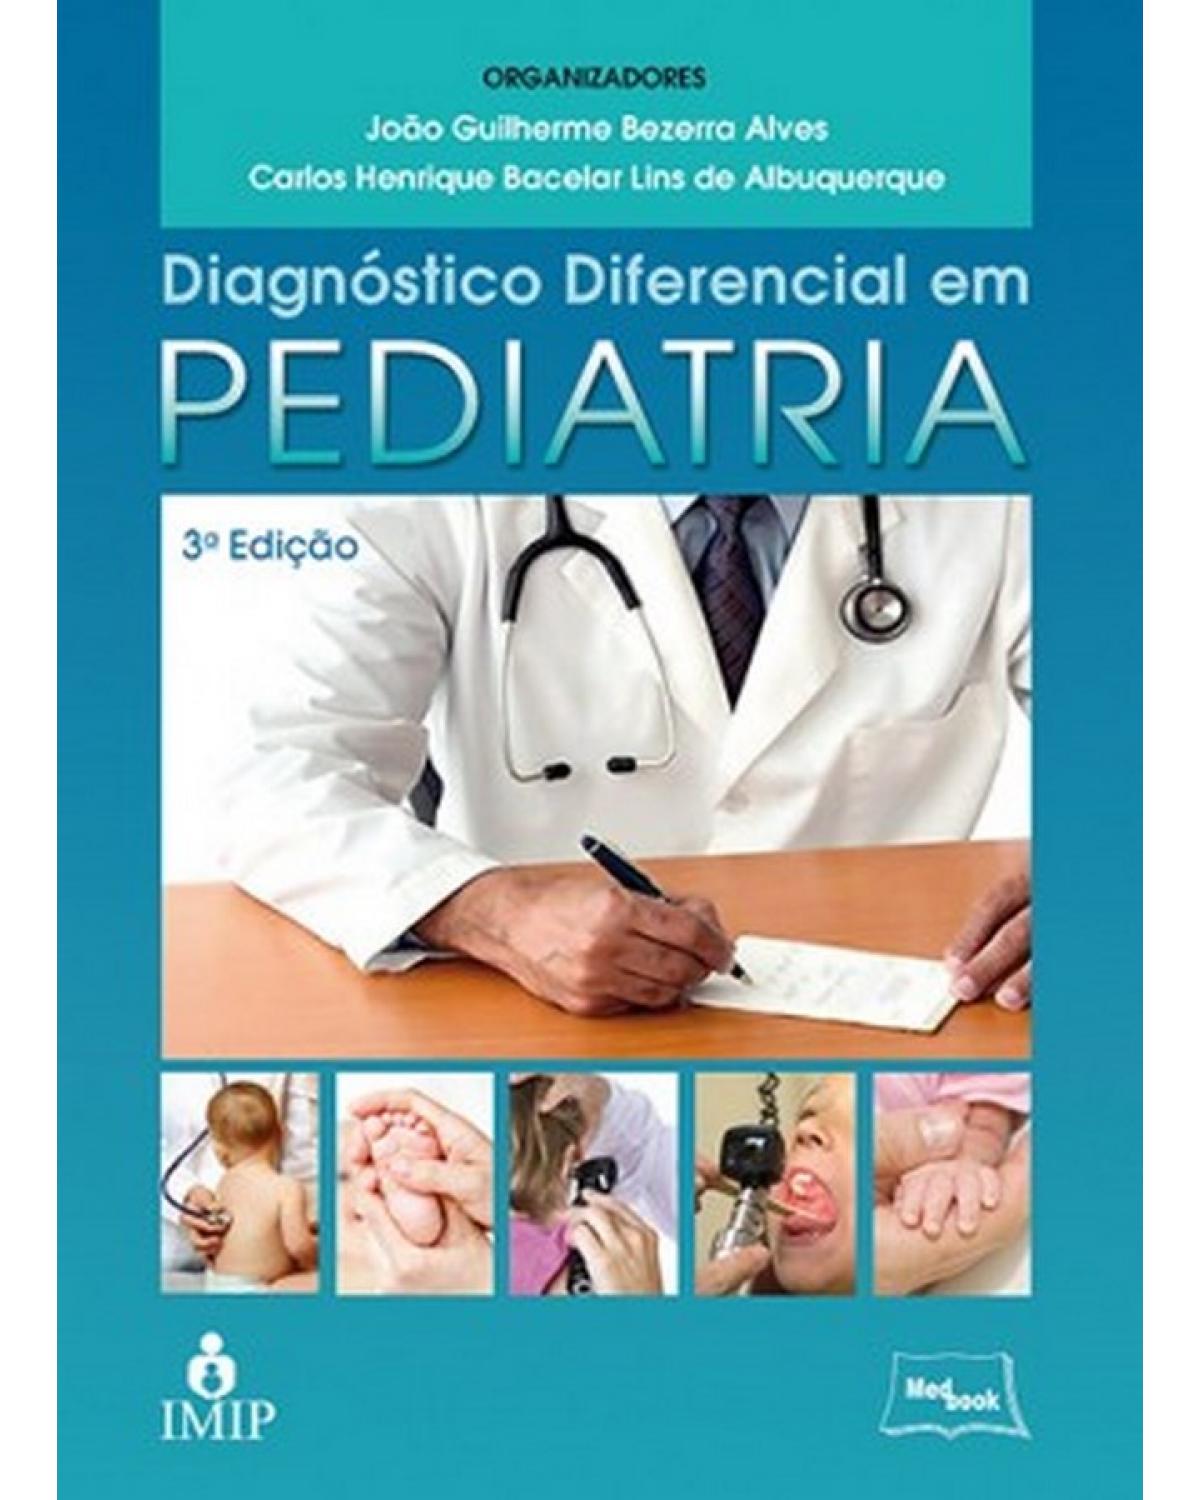 Diagnóstico diferencial em pediatria - 3ª Edição | 2013